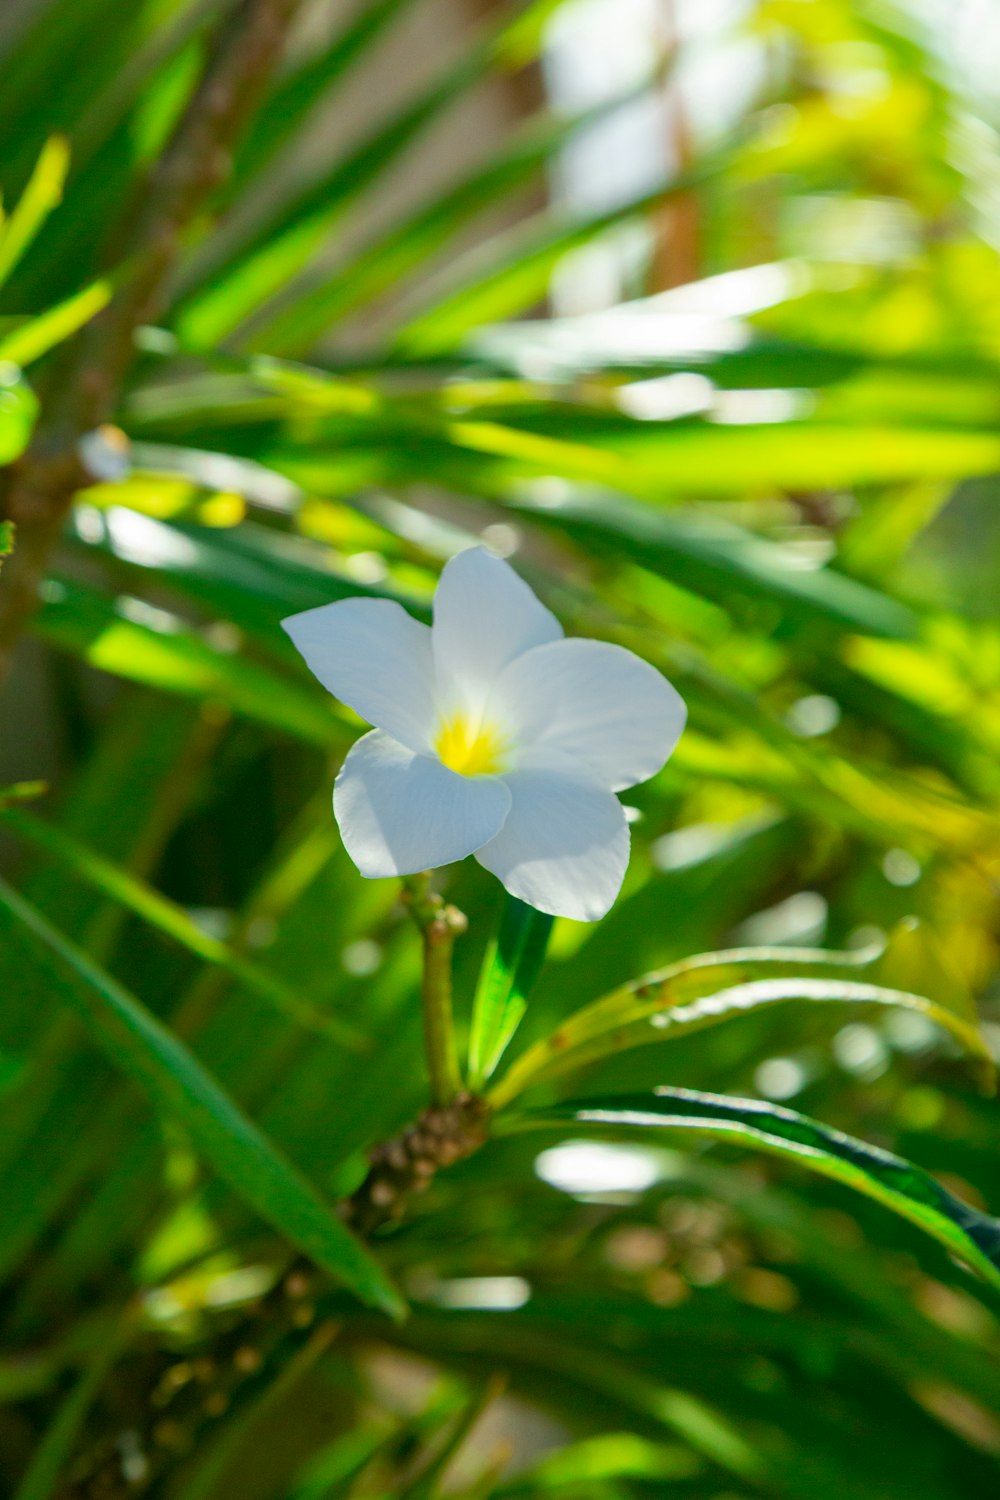 eine weiße Blume mit gelber Mitte, die auf einer Pflanze sitzt